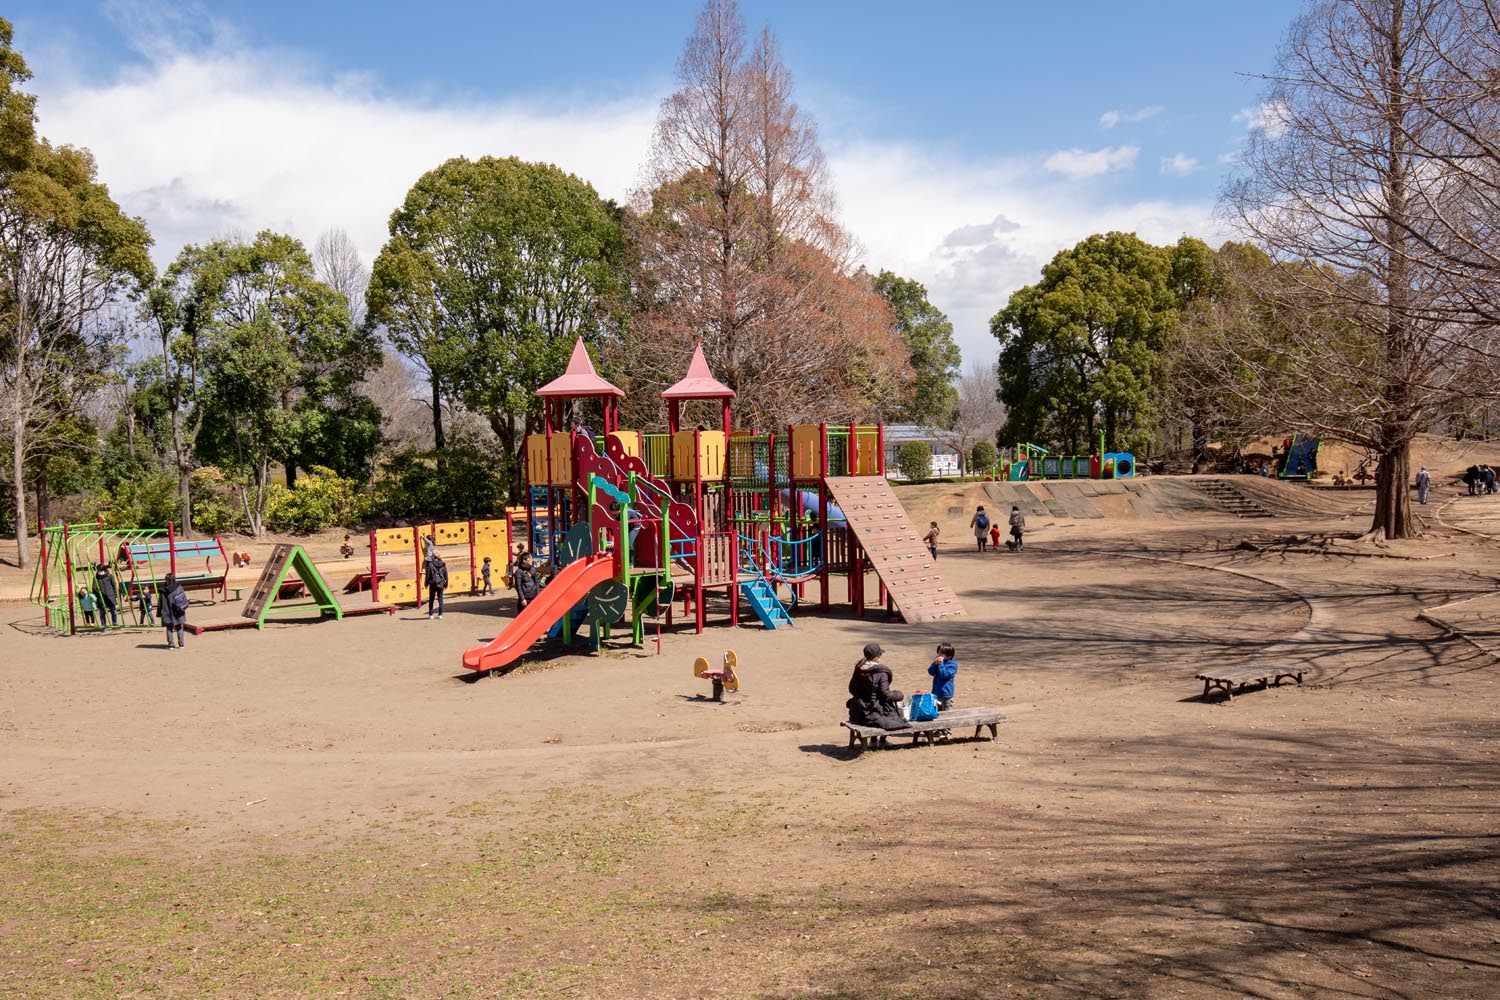 柏の葉公園 千葉県柏市 冒険のトリデ 大型複合遊具の広場 公園へ行こう